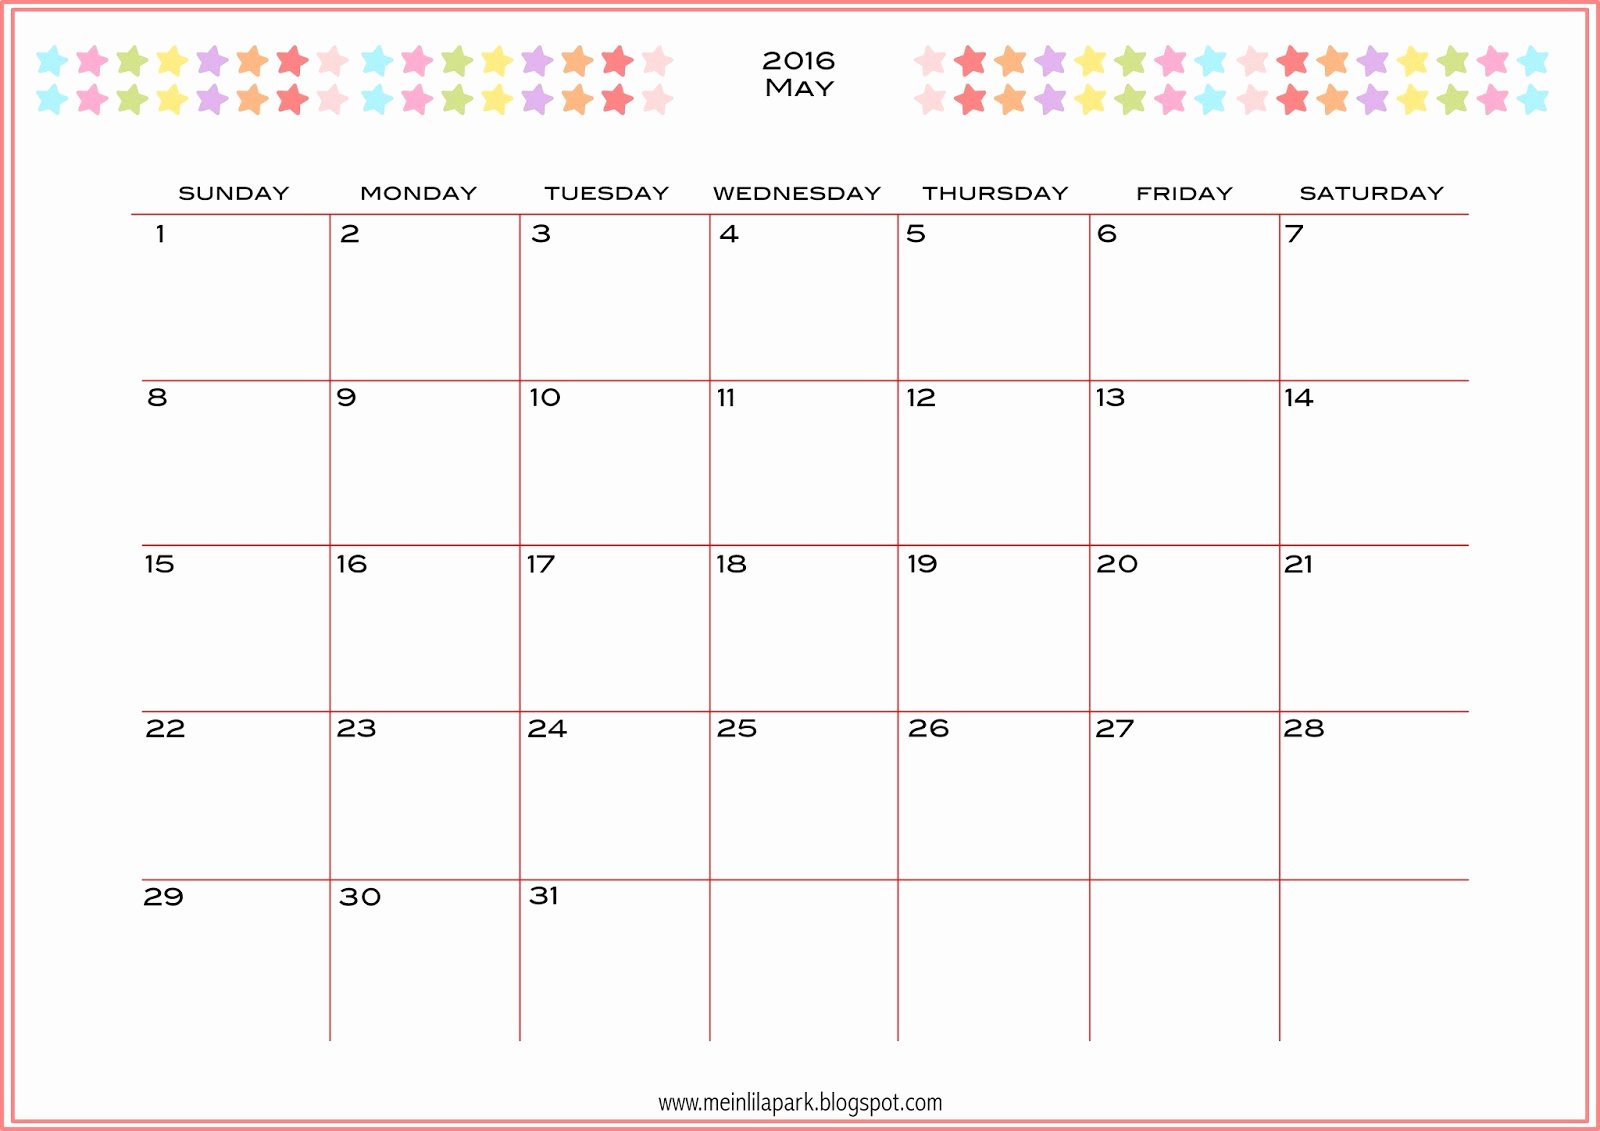 Free Weekly Printable Calendar Beautiful Free Printable 2016 Planner Calendar Monthly Calendar